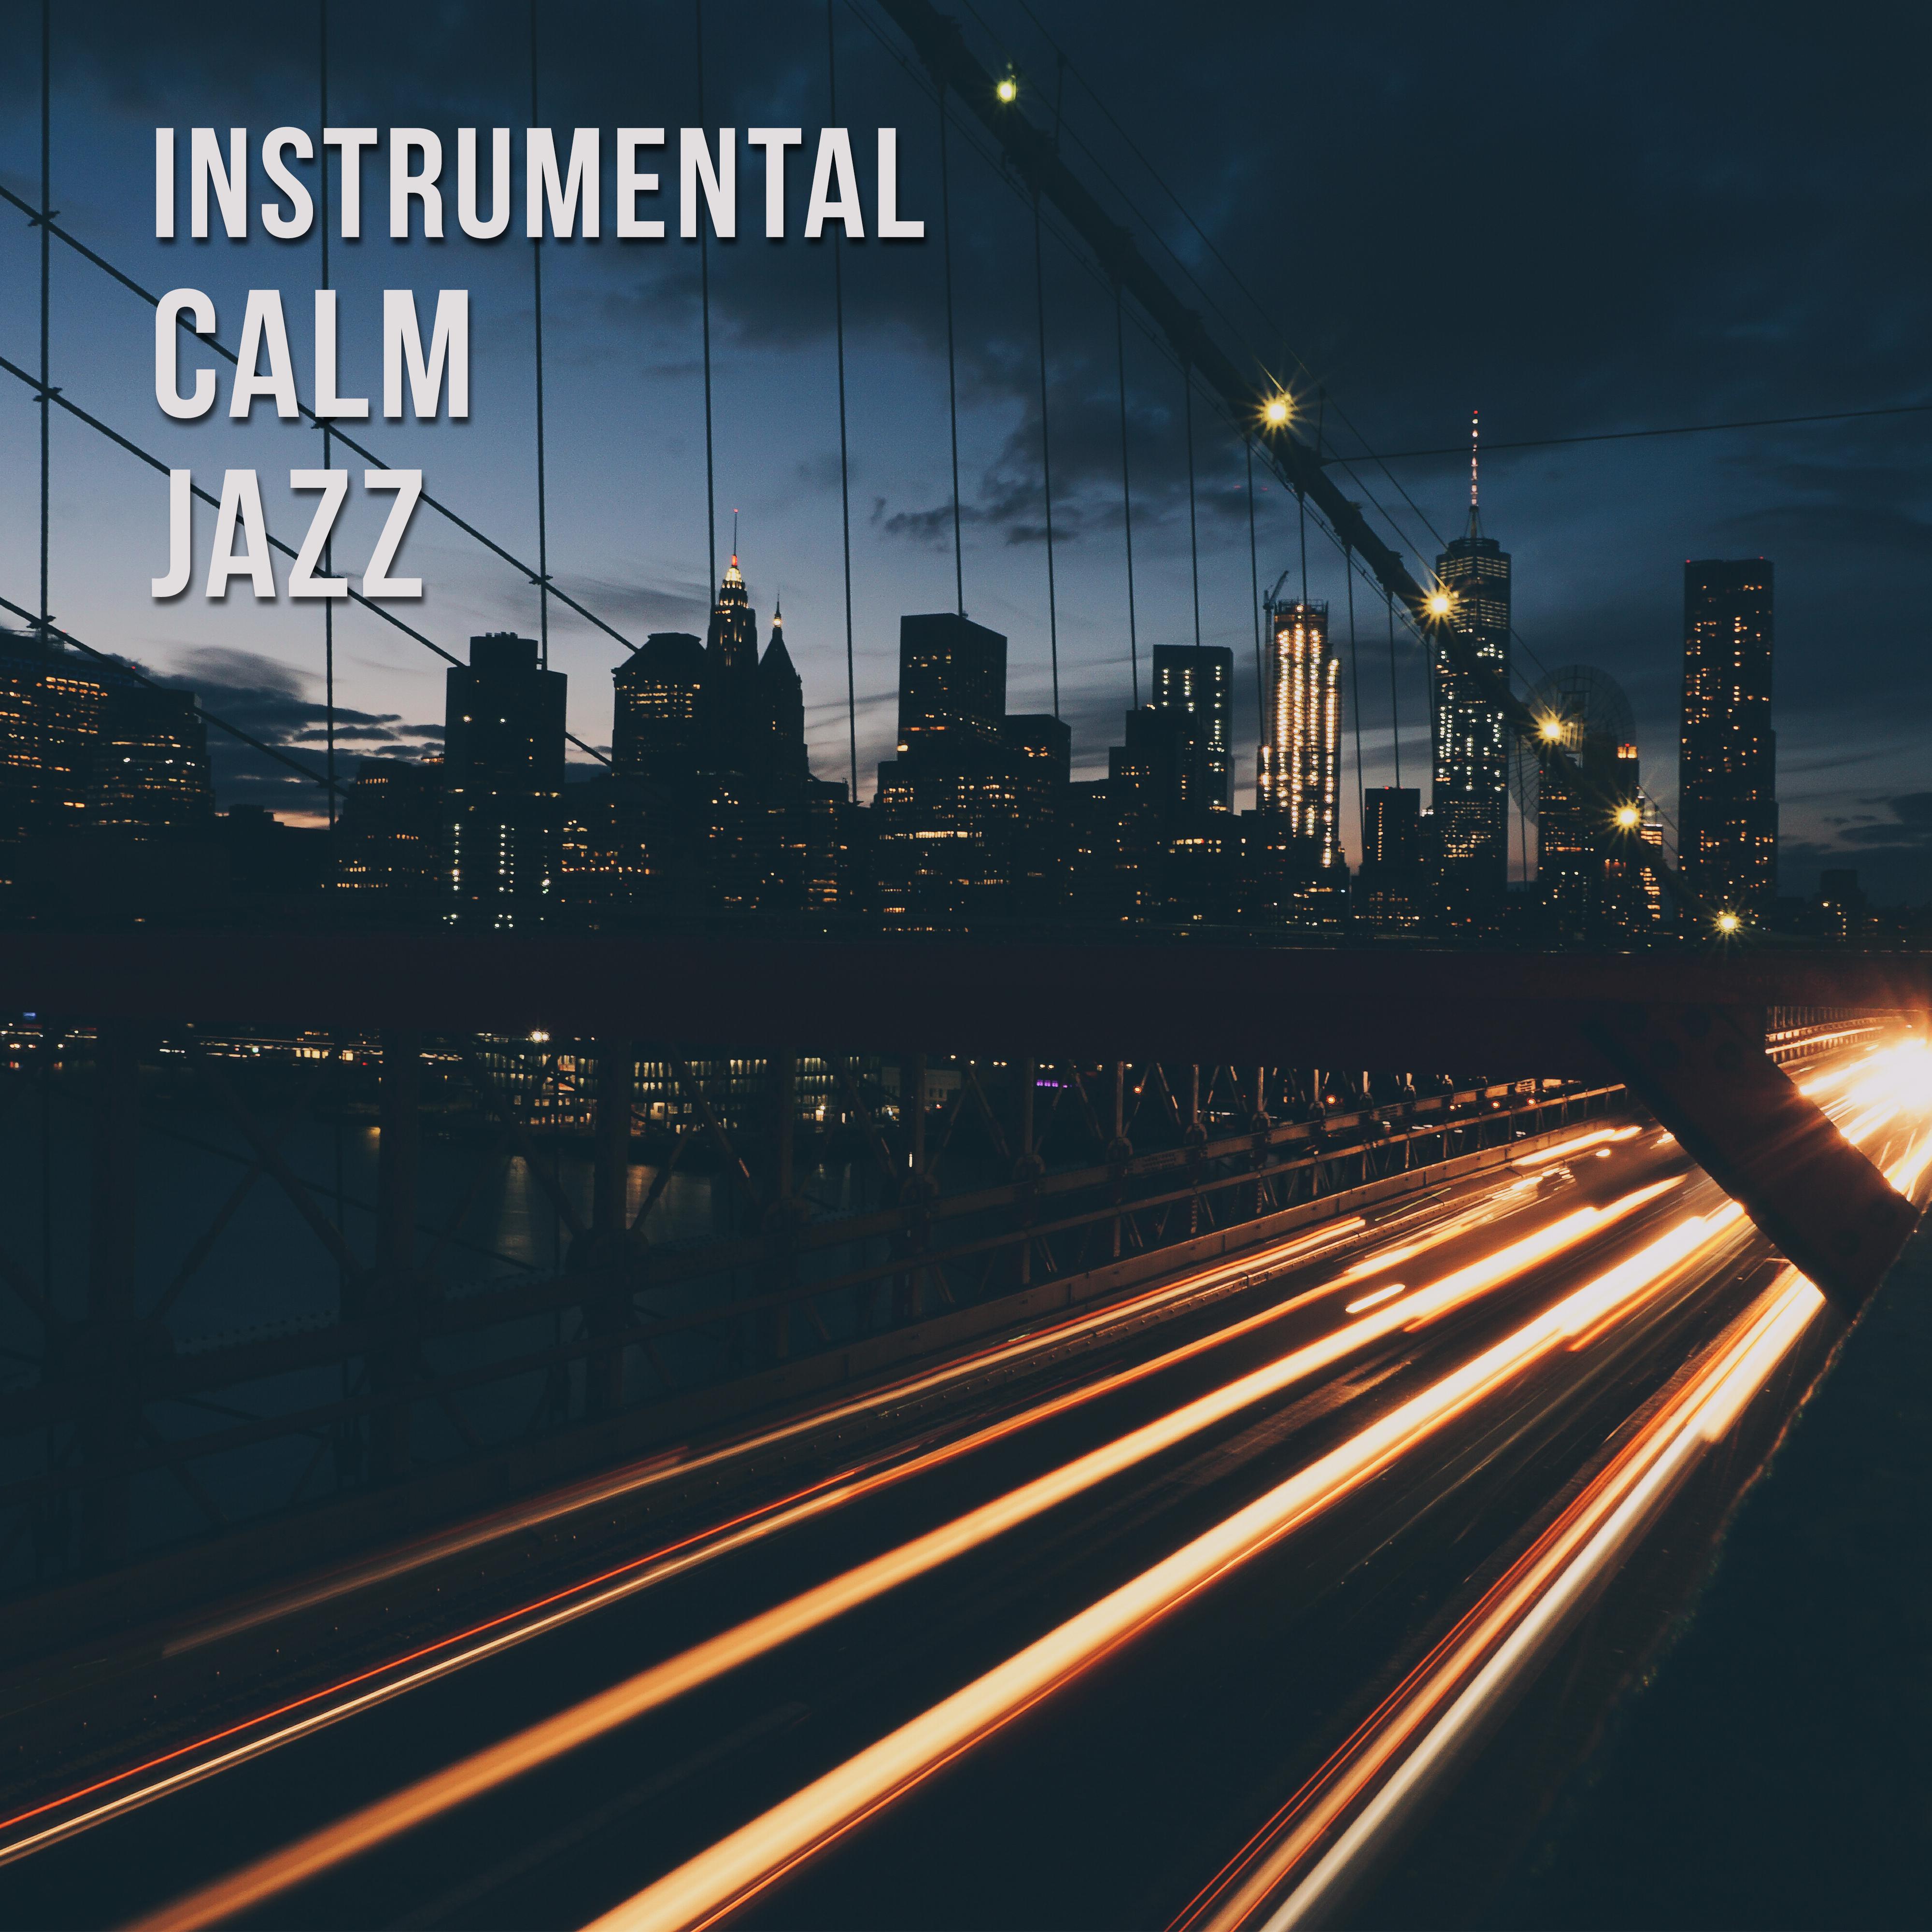 Instrumental Calm Jazz  Beautiful Restaurant Jazz, Smooth Sounds to Relax, Lazy Day with Jazz